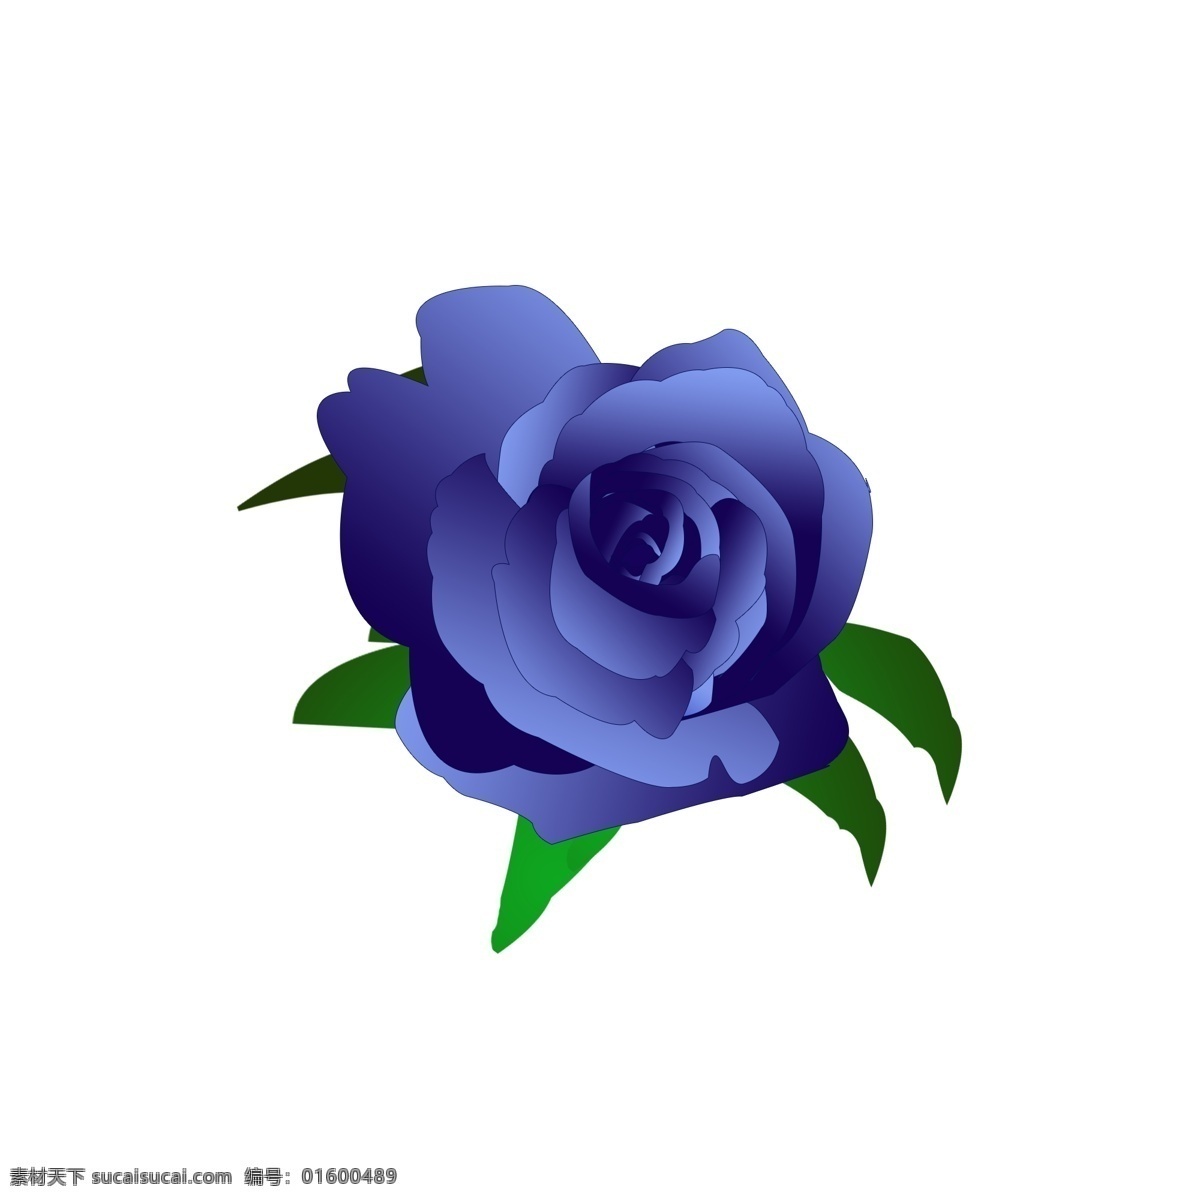 蓝色 妖姬 玫瑰 玫瑰花 元素 蓝玫瑰 蓝色妖姬 玫瑰花朵 手绘花朵 蓝色妖姬玫瑰